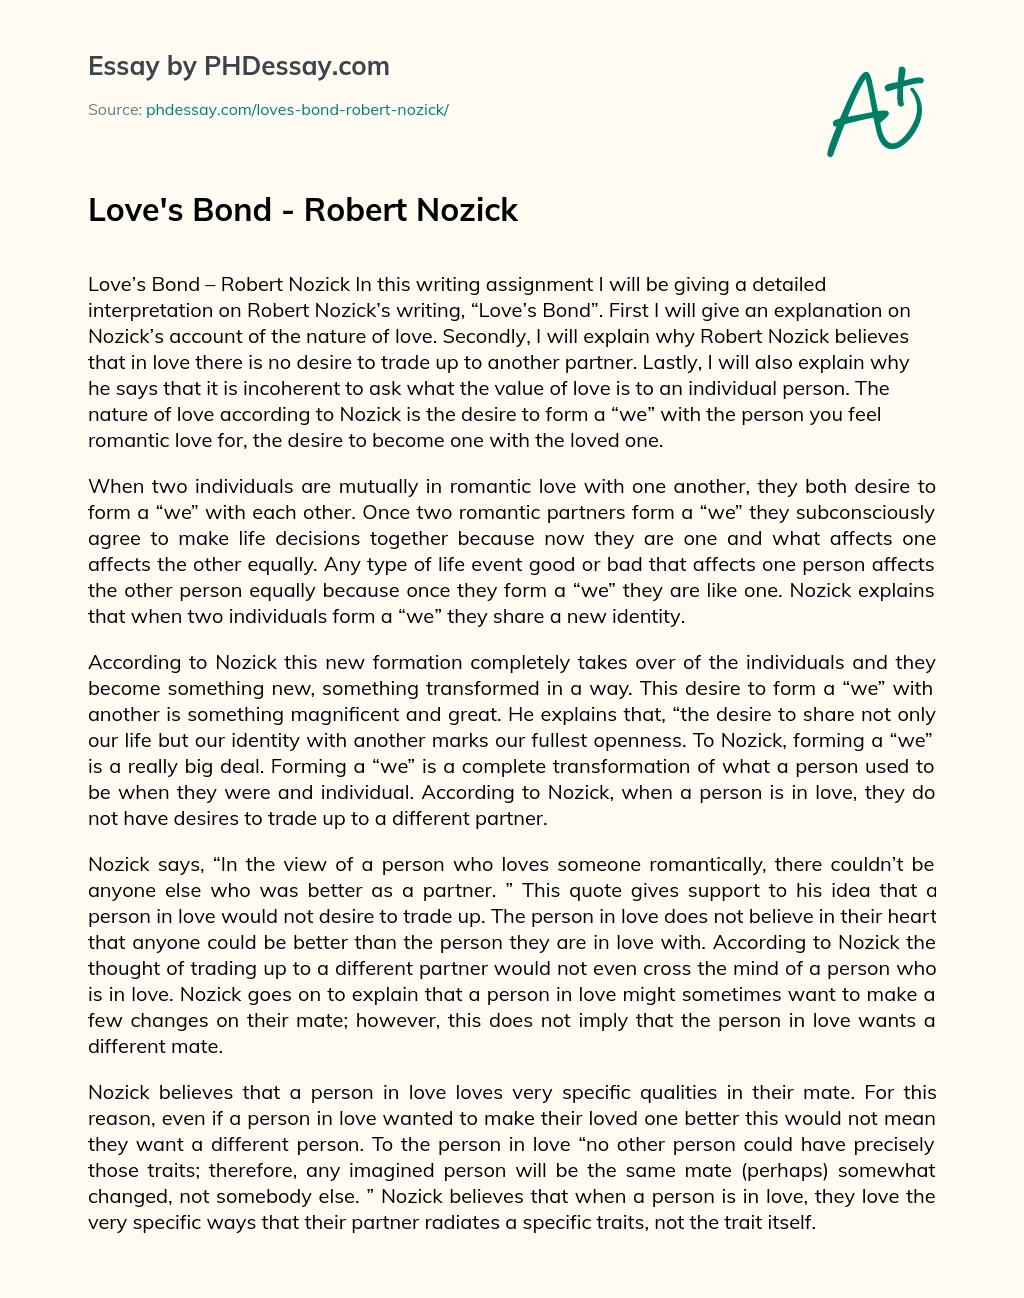 Love’s Bond – Robert Nozick essay